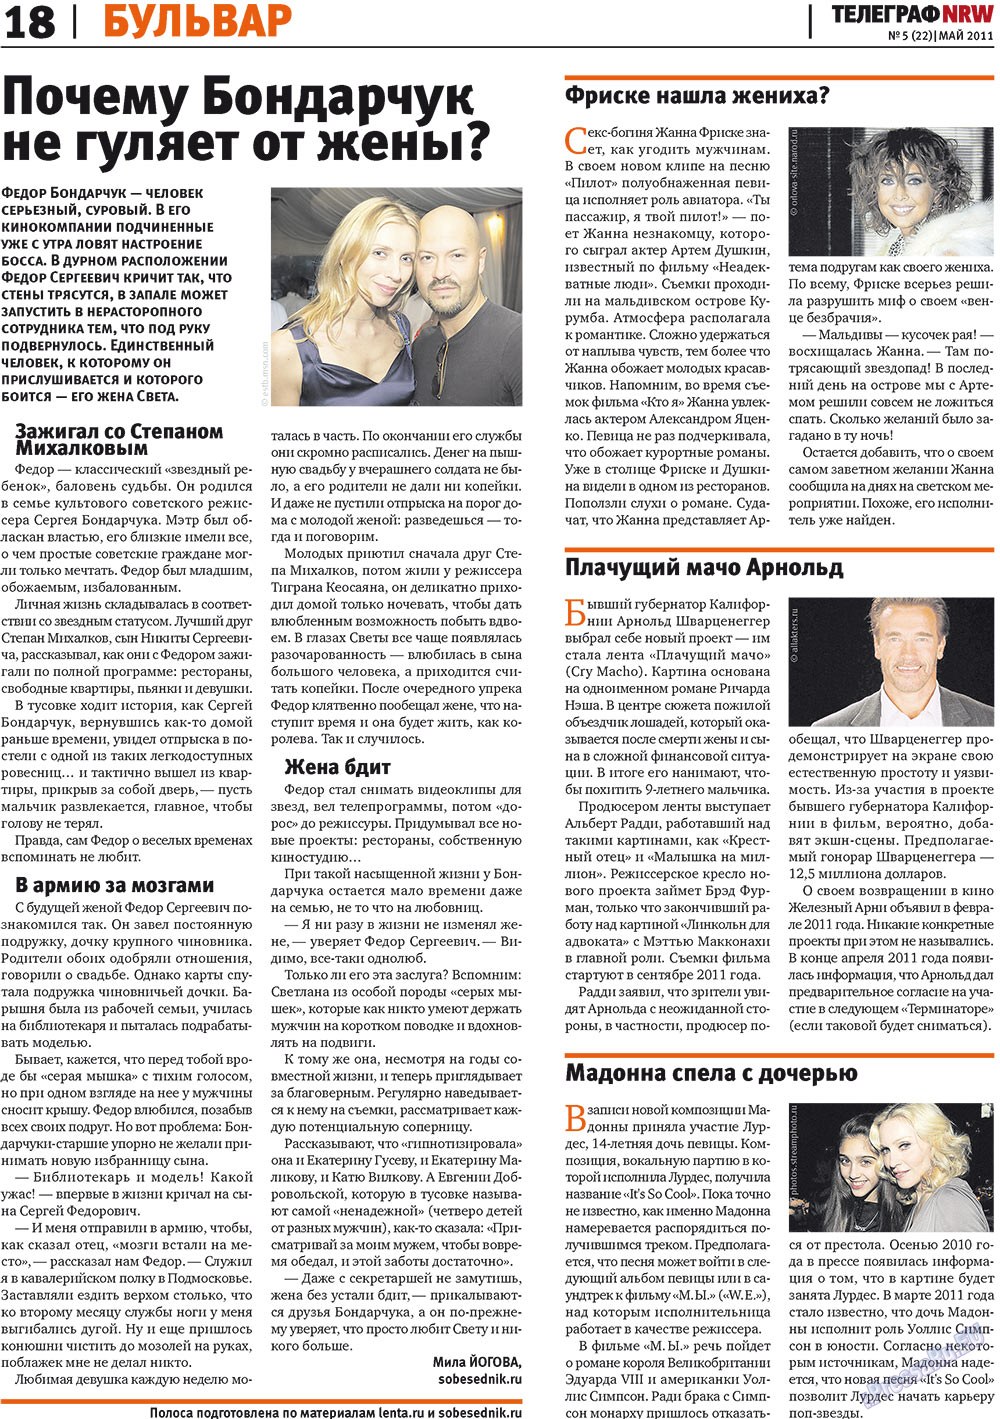 Телеграф NRW (газета). 2011 год, номер 5, стр. 18